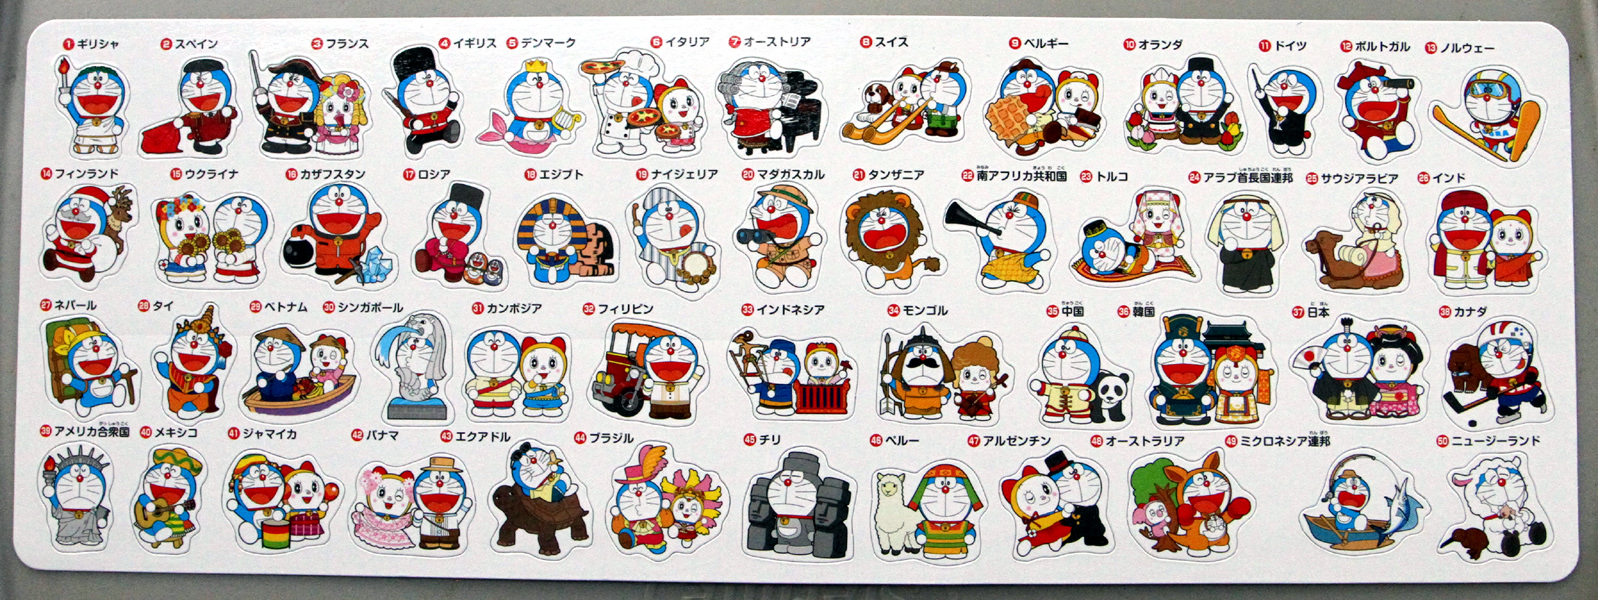 The Doraemons #23